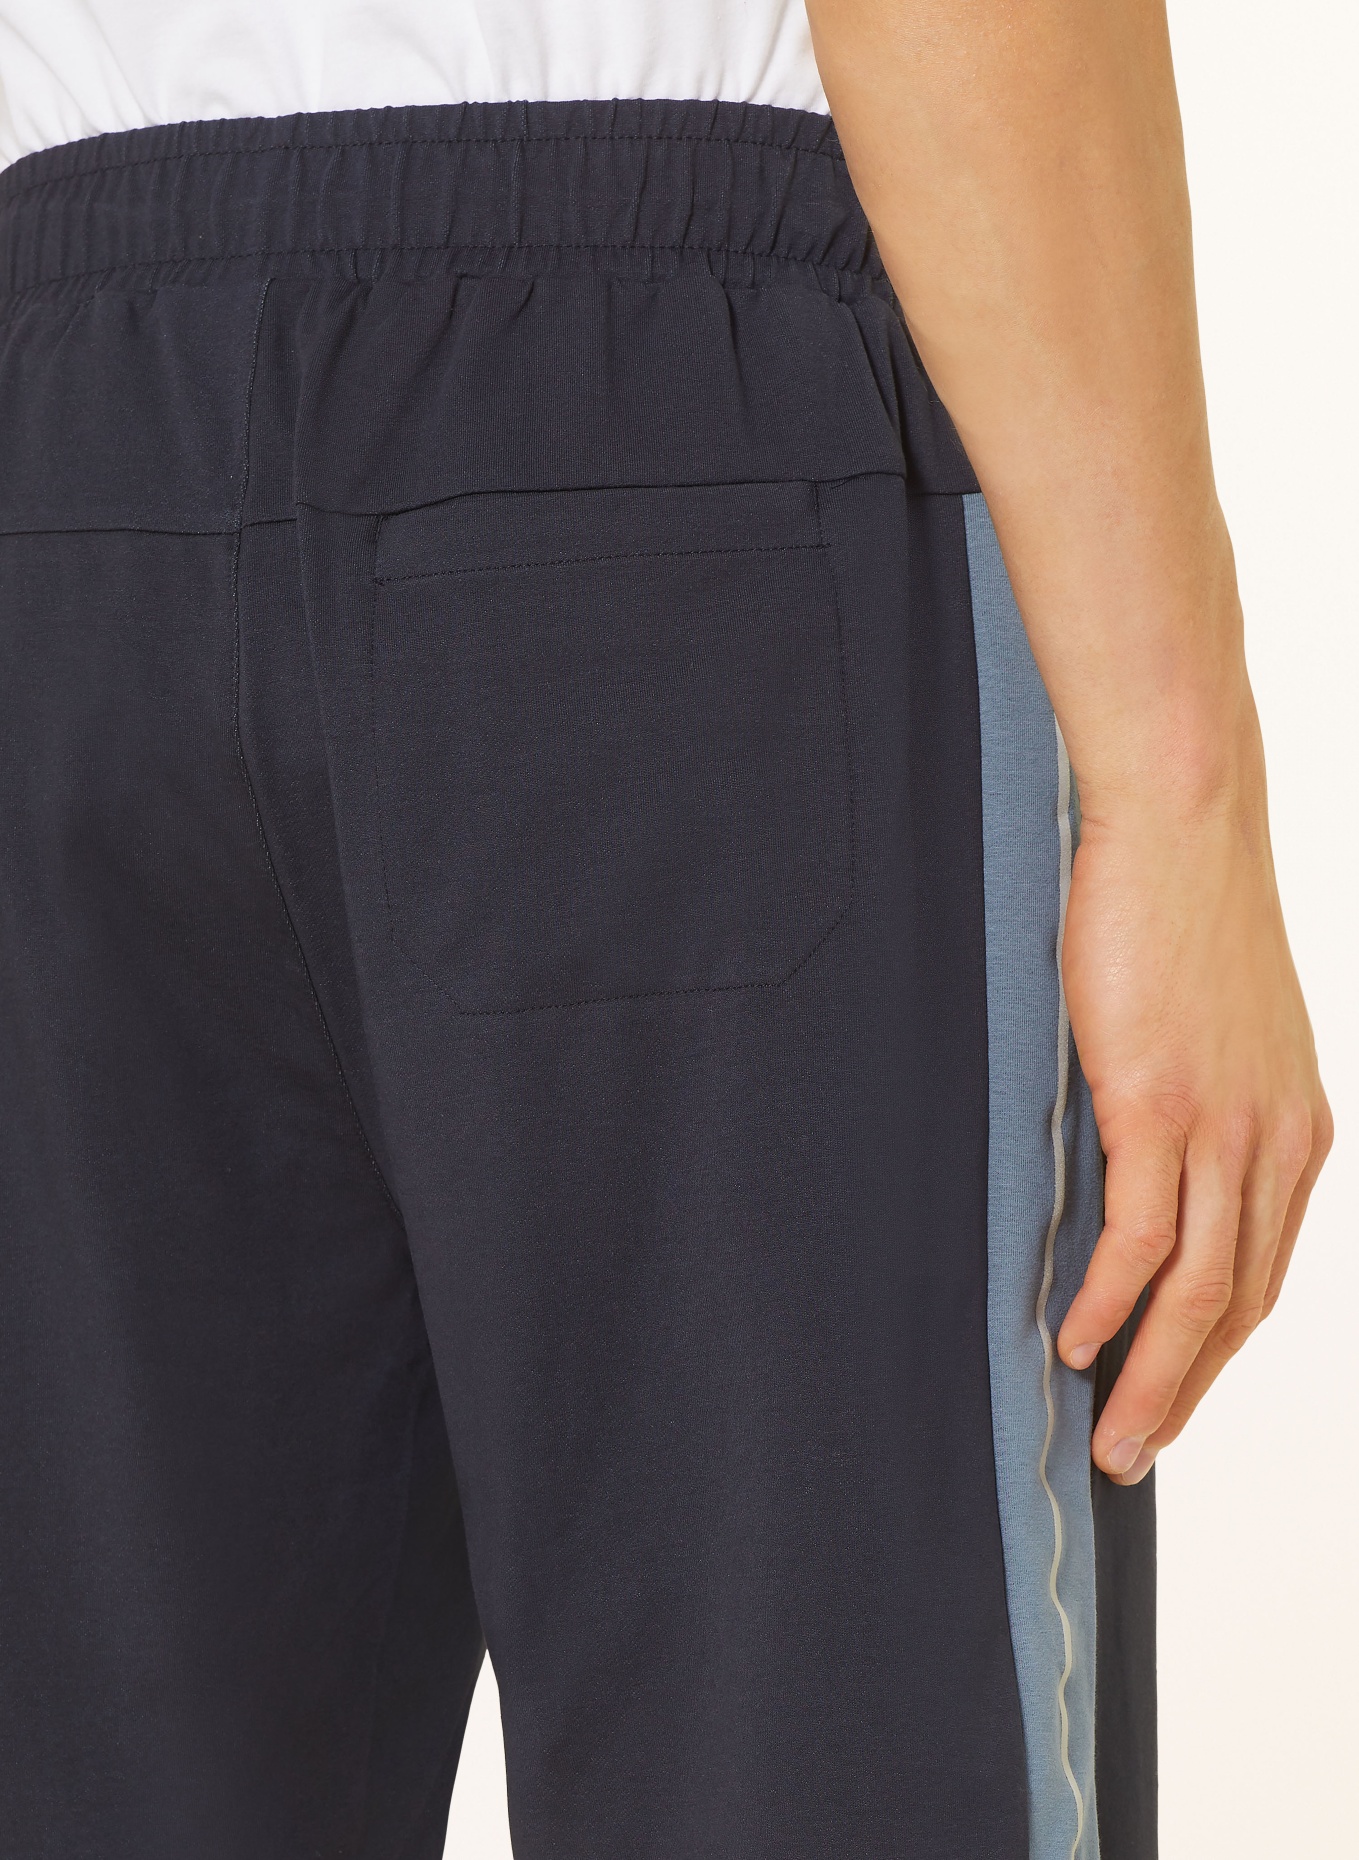 JOY sportswear Sweat shorts JESKO regular fit, Color: DARK BLUE (Image 5)